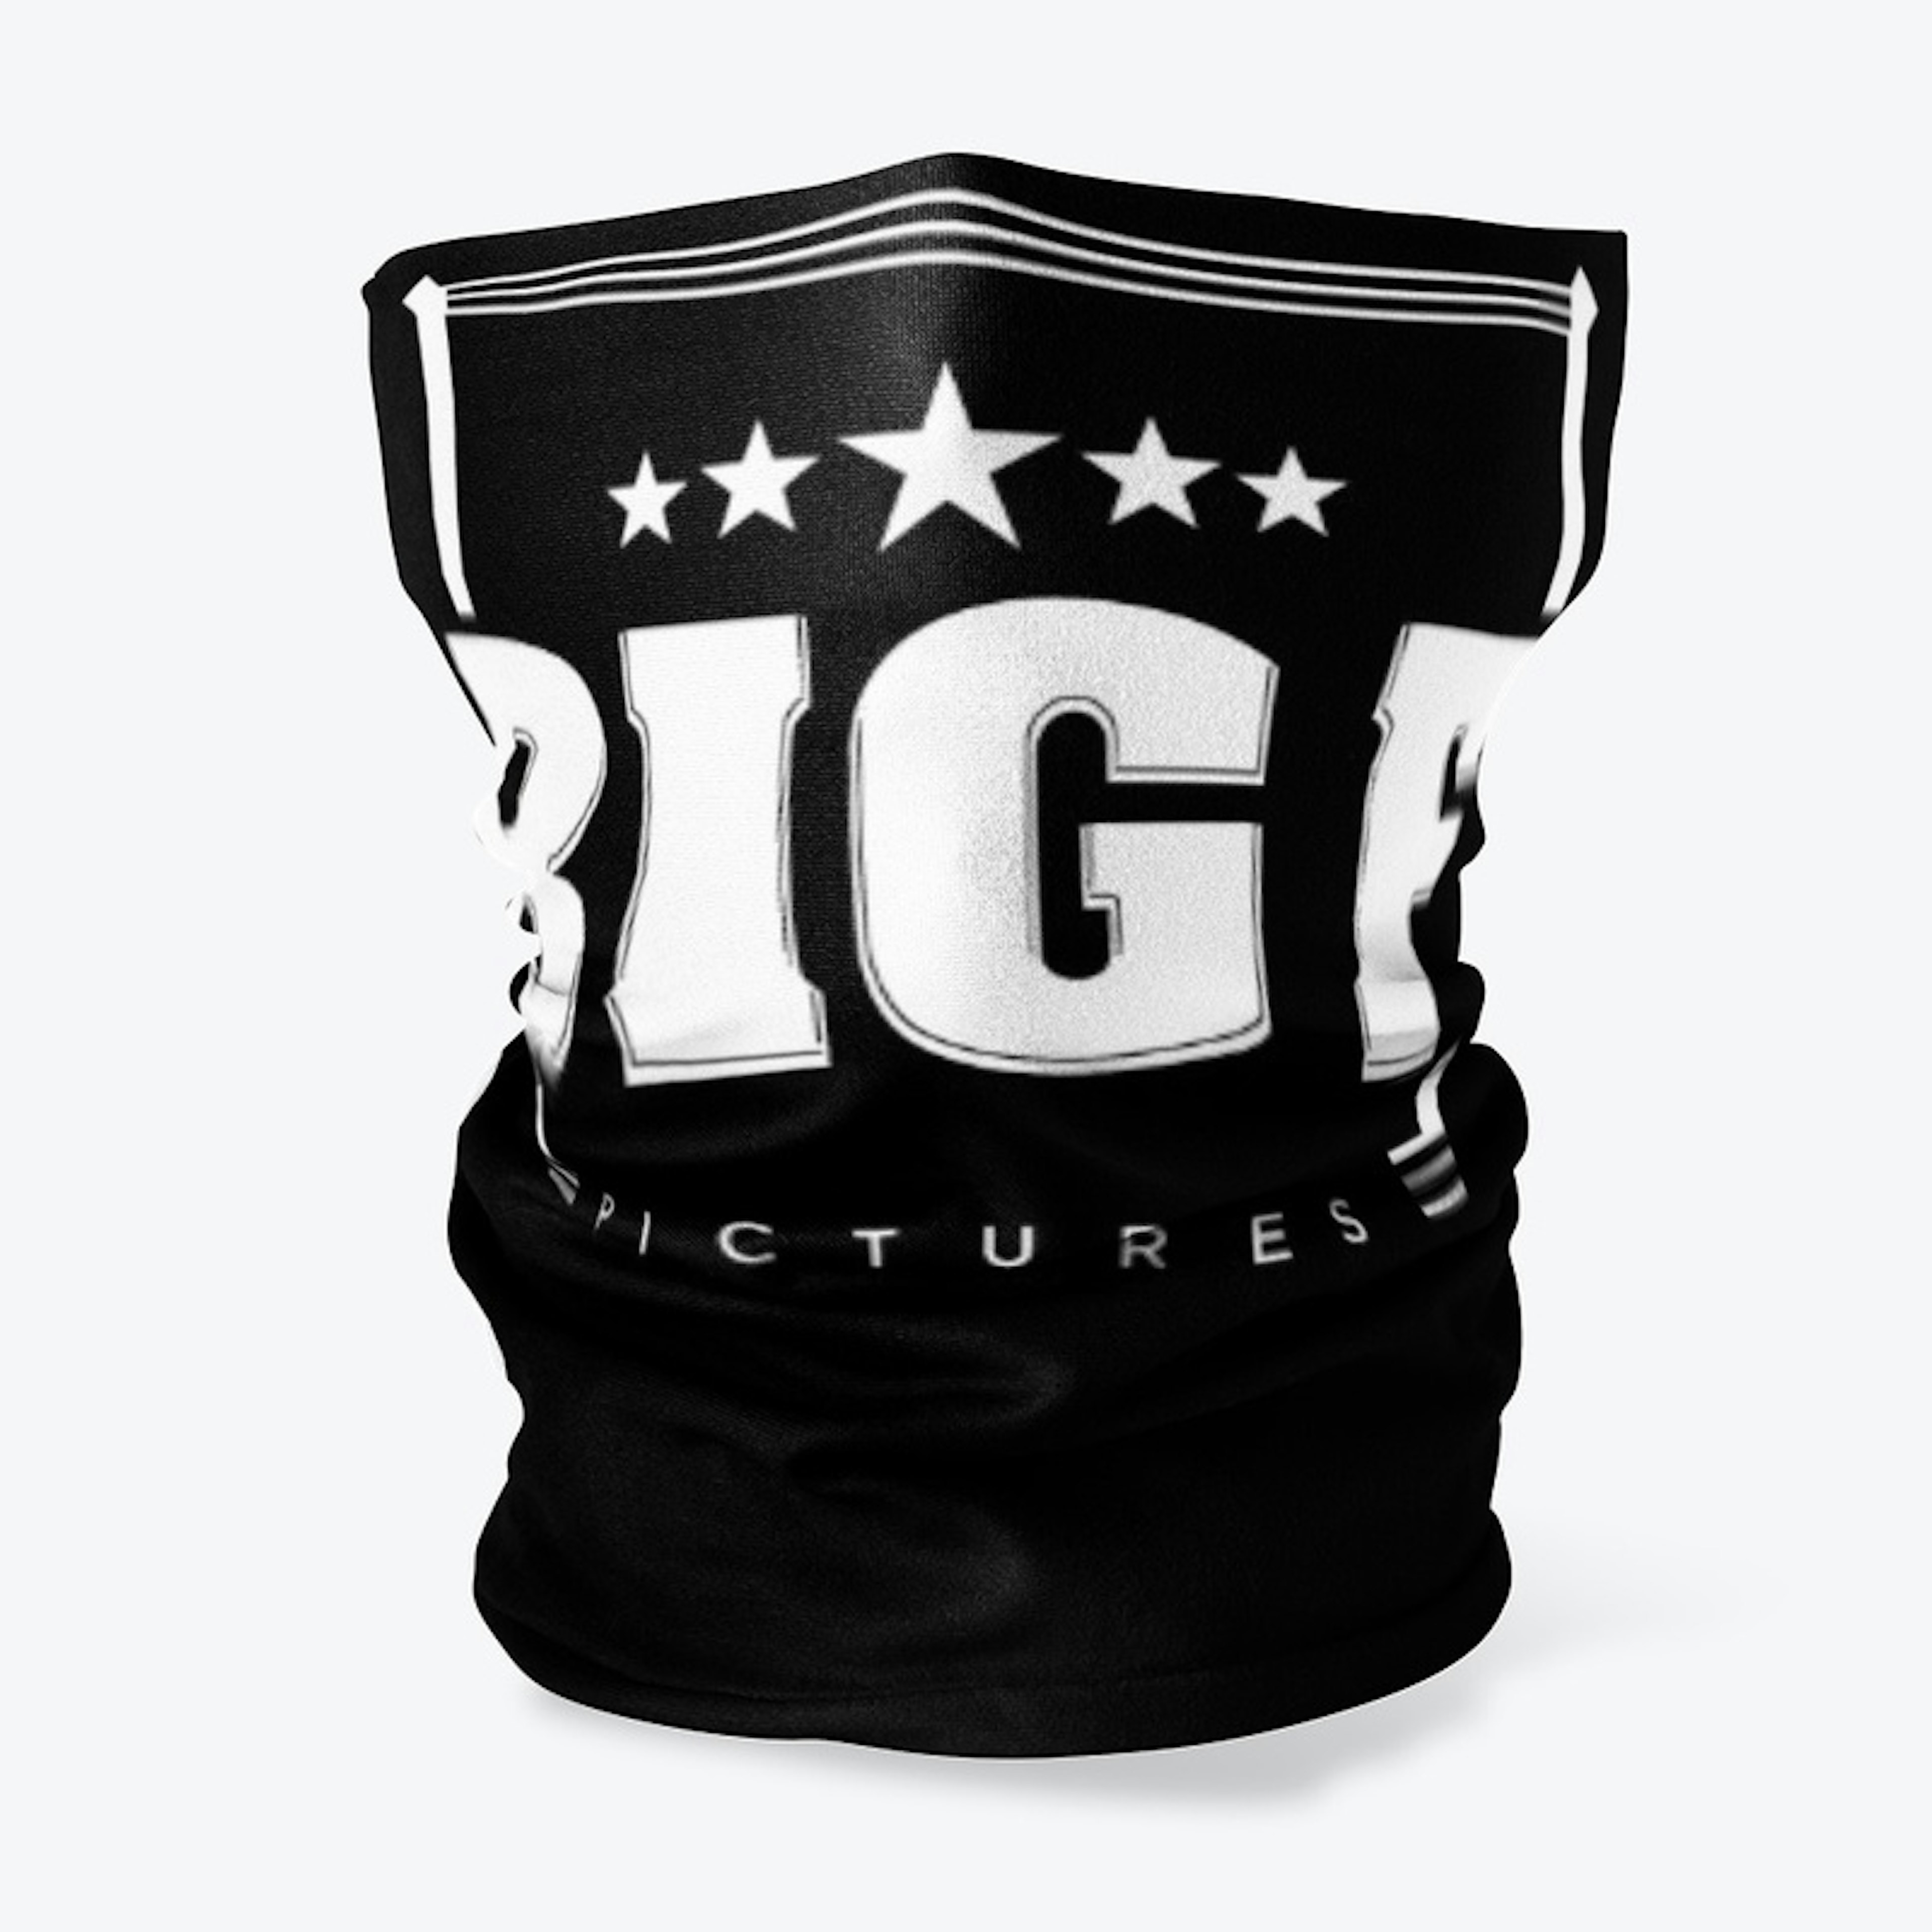 Big F Pictures Logo Masks